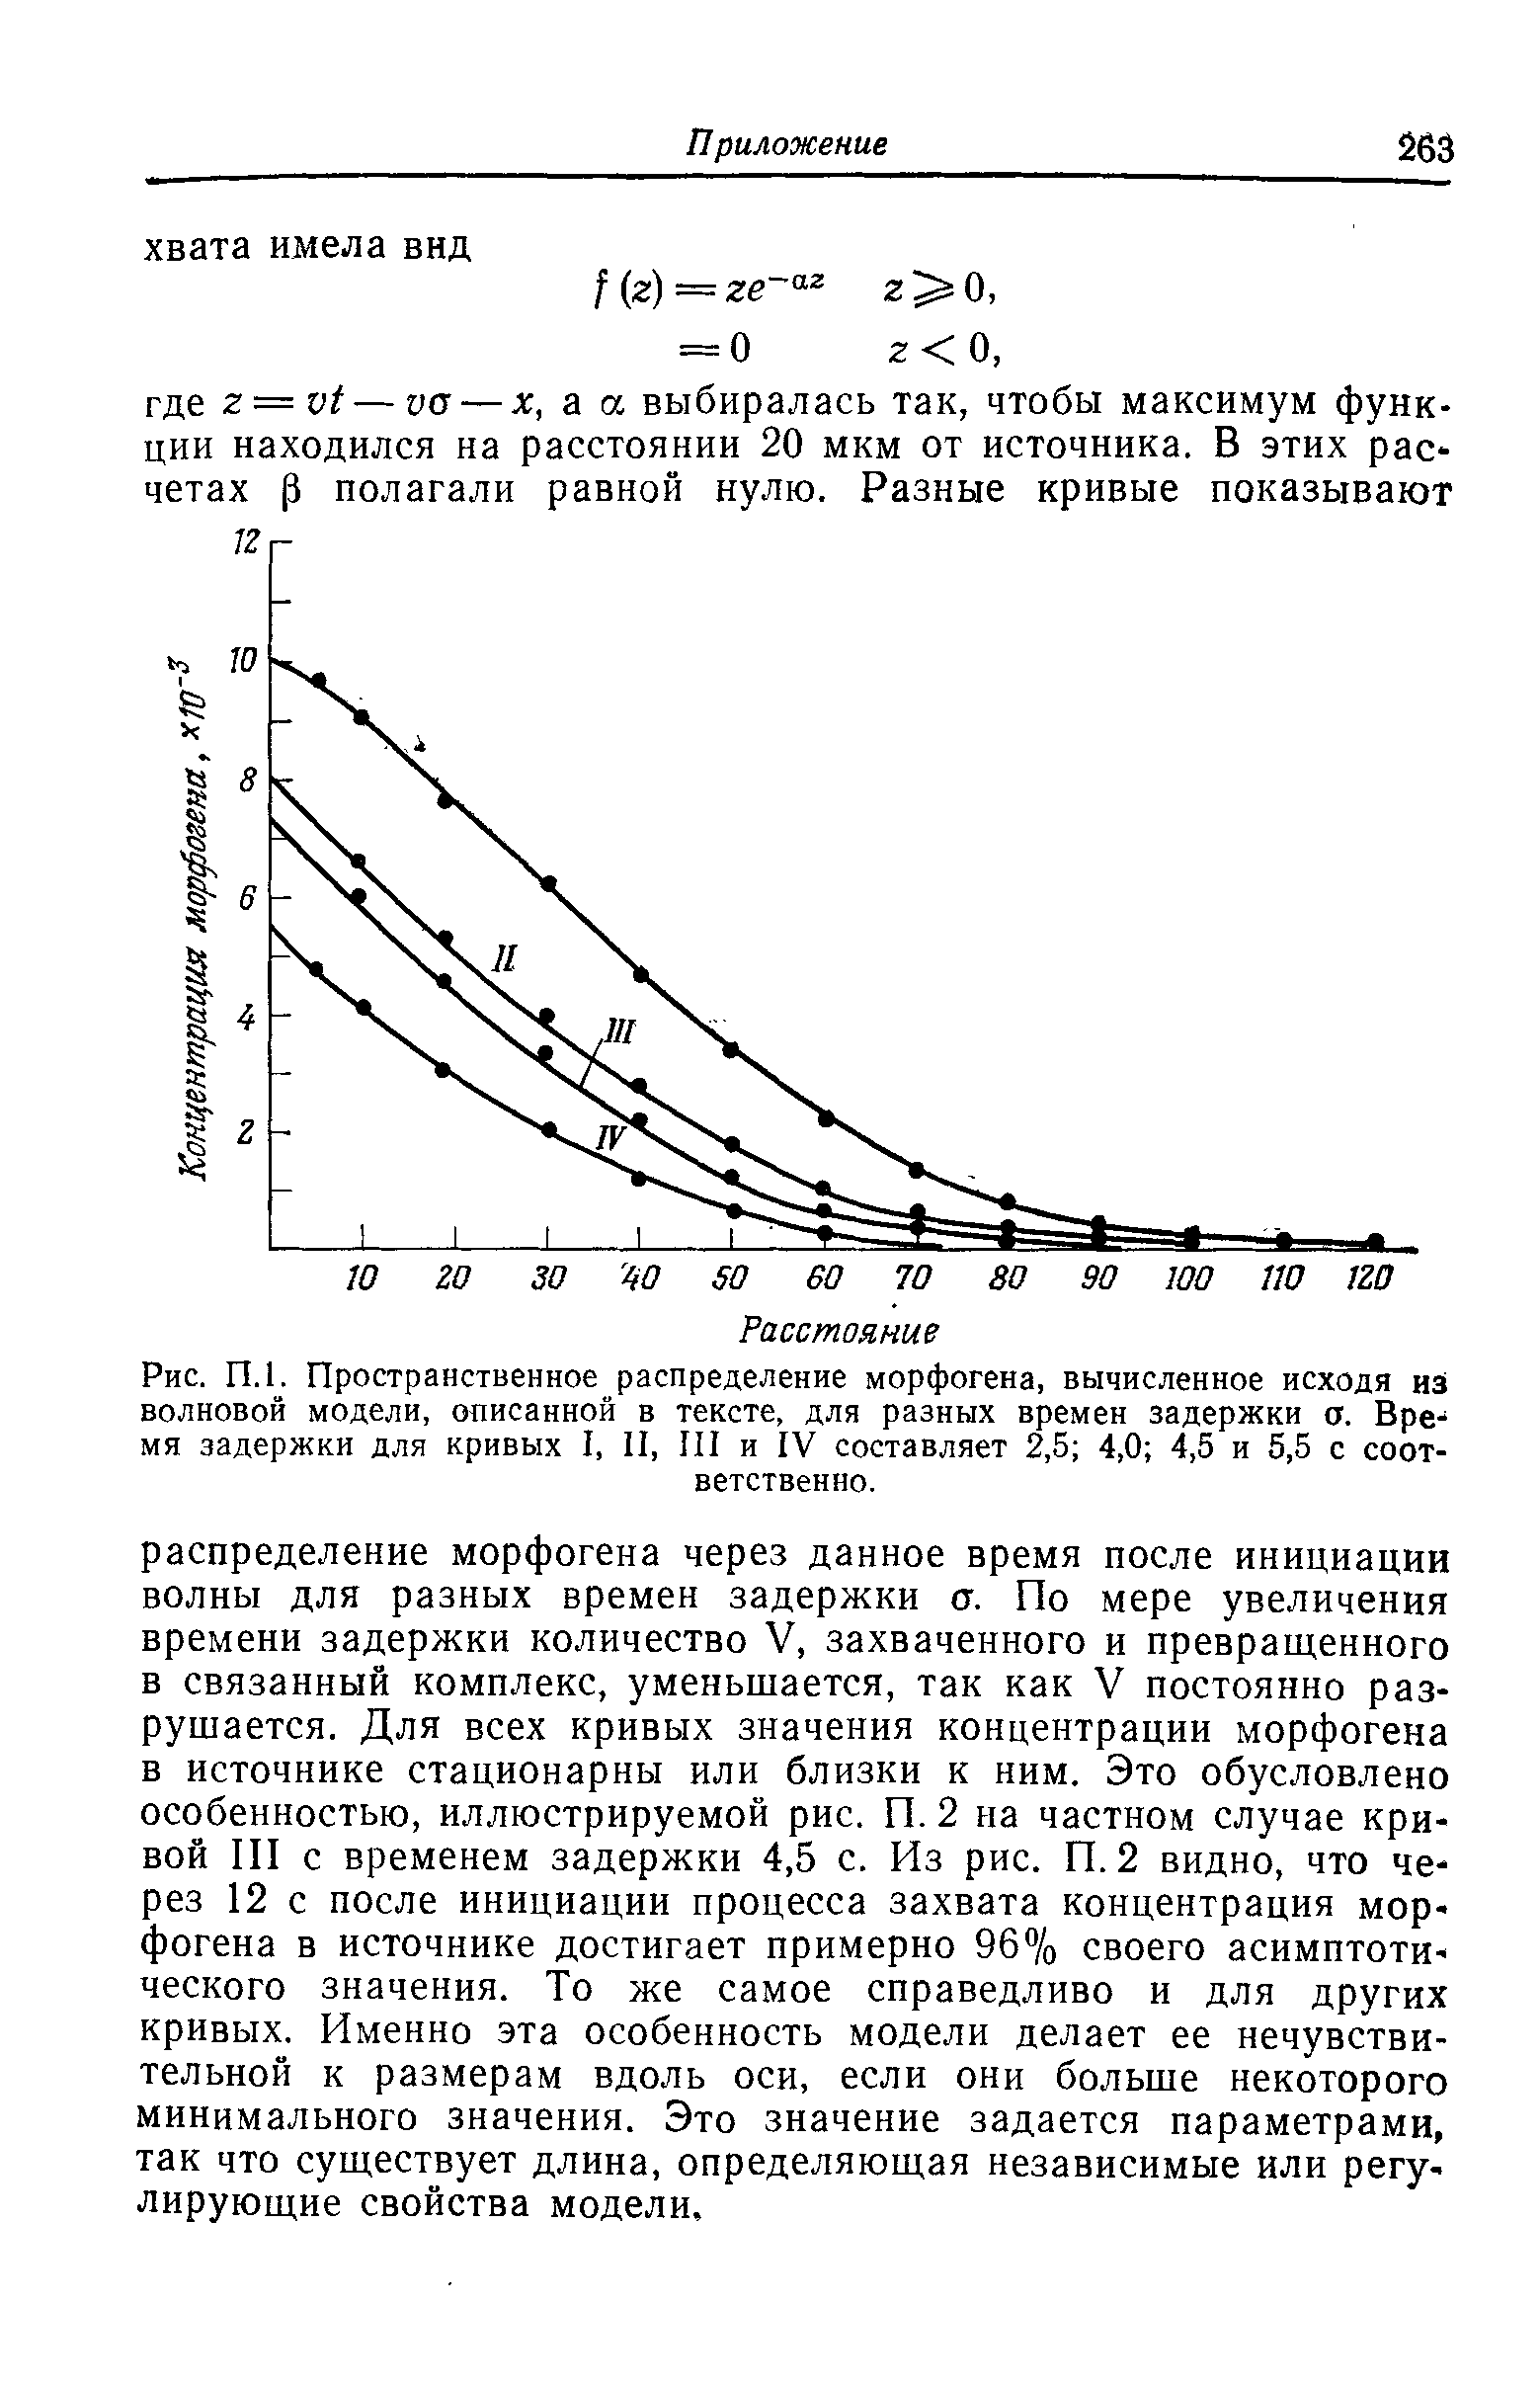 Рис. П.1. Пространственное распределение морфогена, вычисленное исходя из волновой модели, описанной в тексте, для разных времен задержки а. Время задержки для кривых I, II, III и IV составляет 2,5 4,0 4,5 и 5,5 с соответственно.